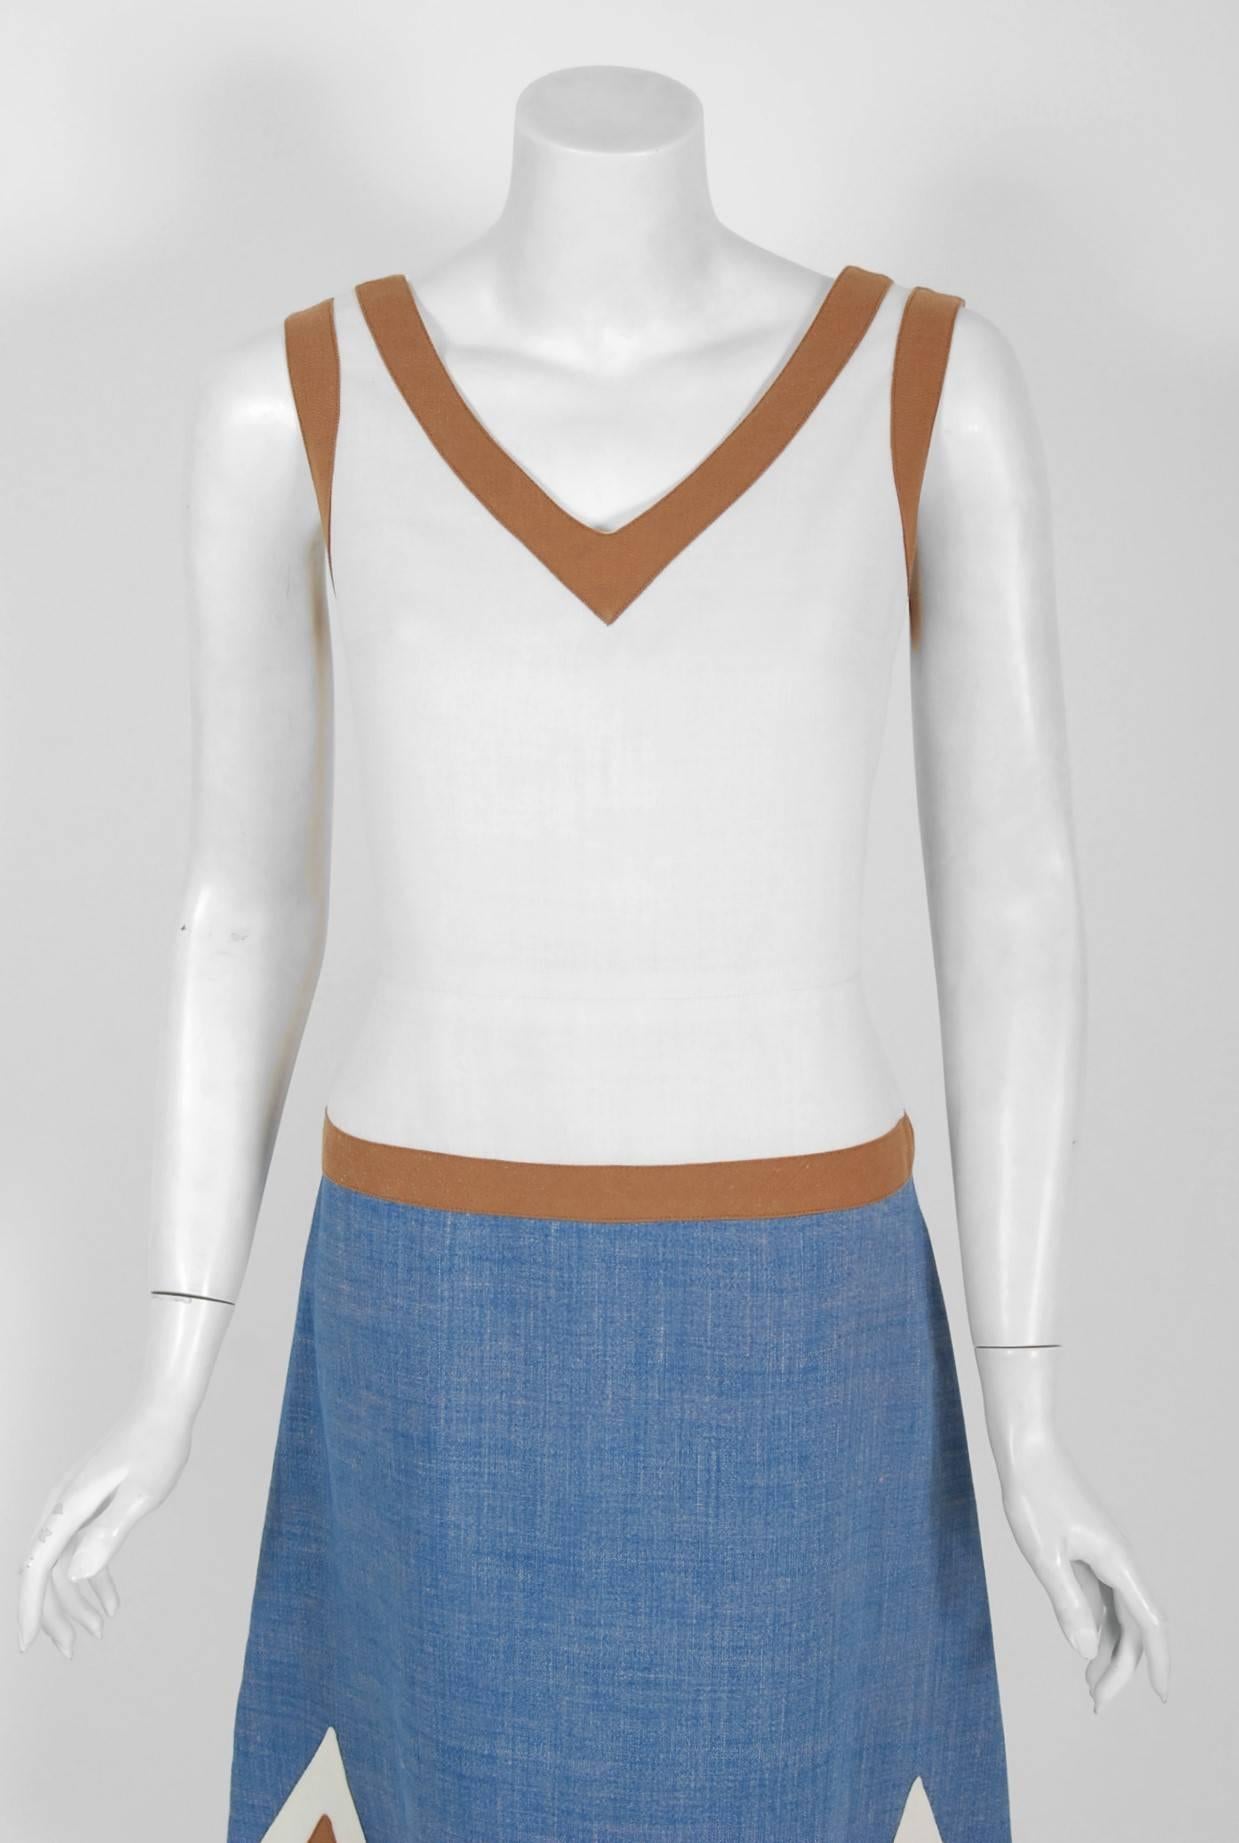 Gray 1969 Louis Feraud Graphic Block-Color Linen Deco Applique Drop-Waist Mod Dress